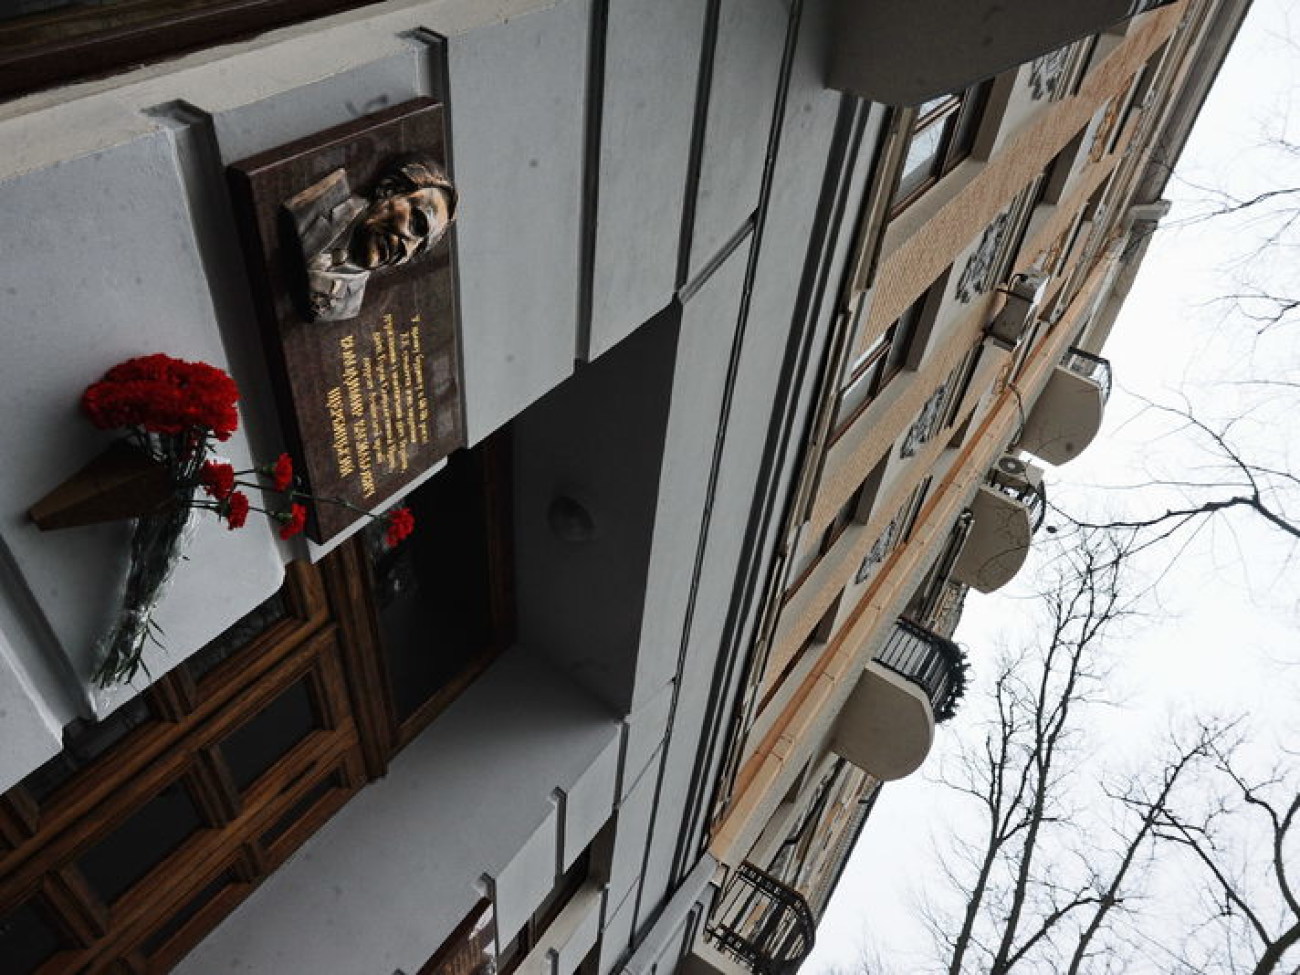 В Киеве открыли мемориальную доску Владимиру Щербицкому, 15 февраля 2013г.